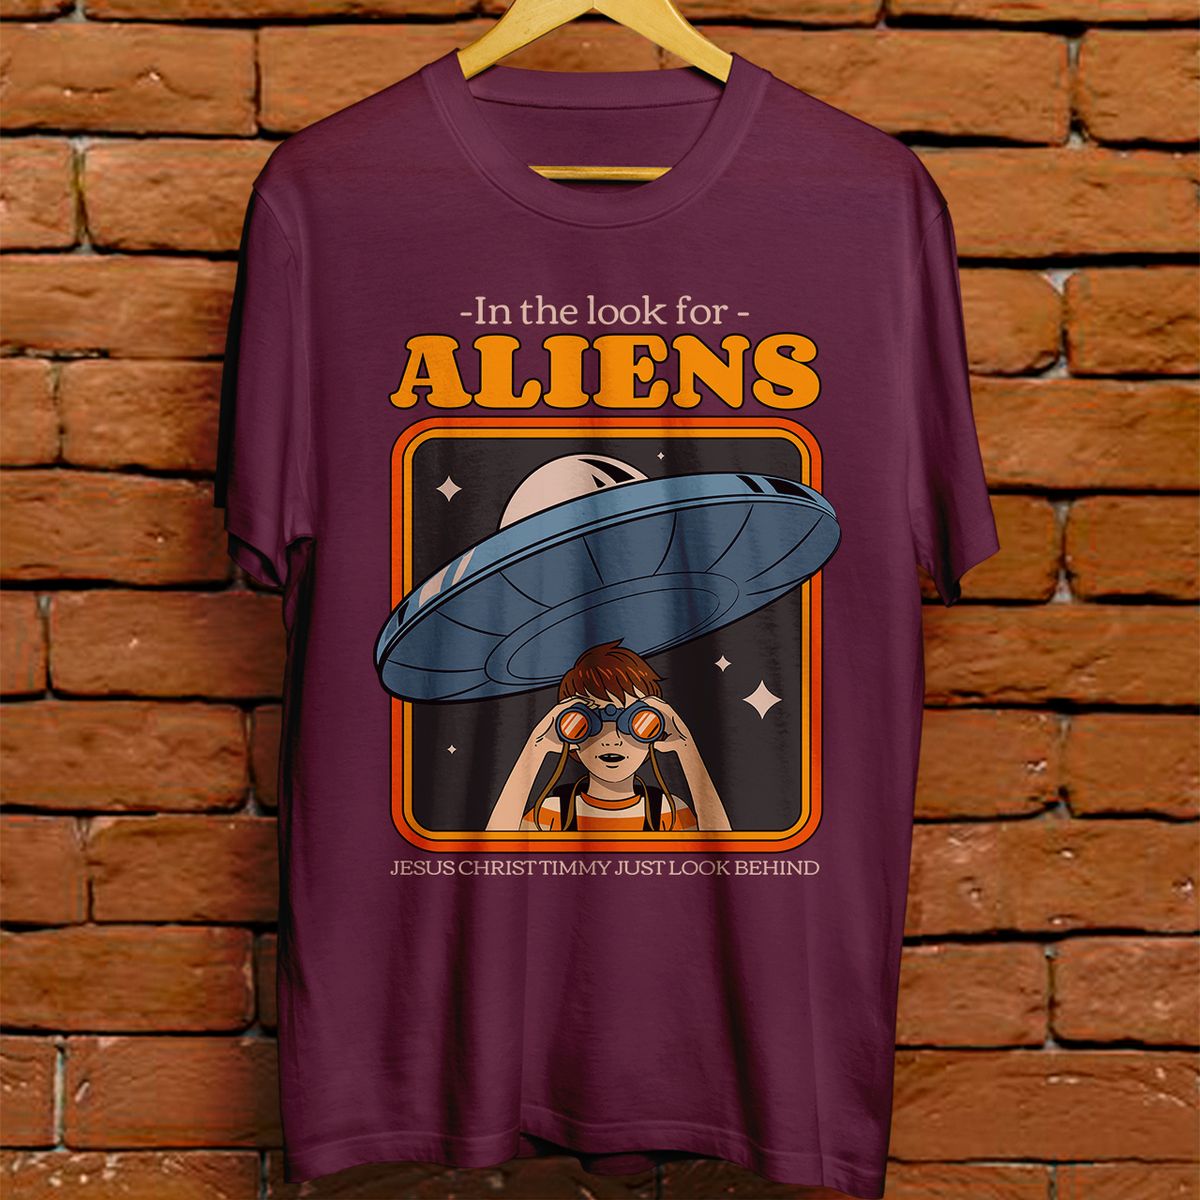 Nome do produto: Camiseta Unissex - In the look for aliens